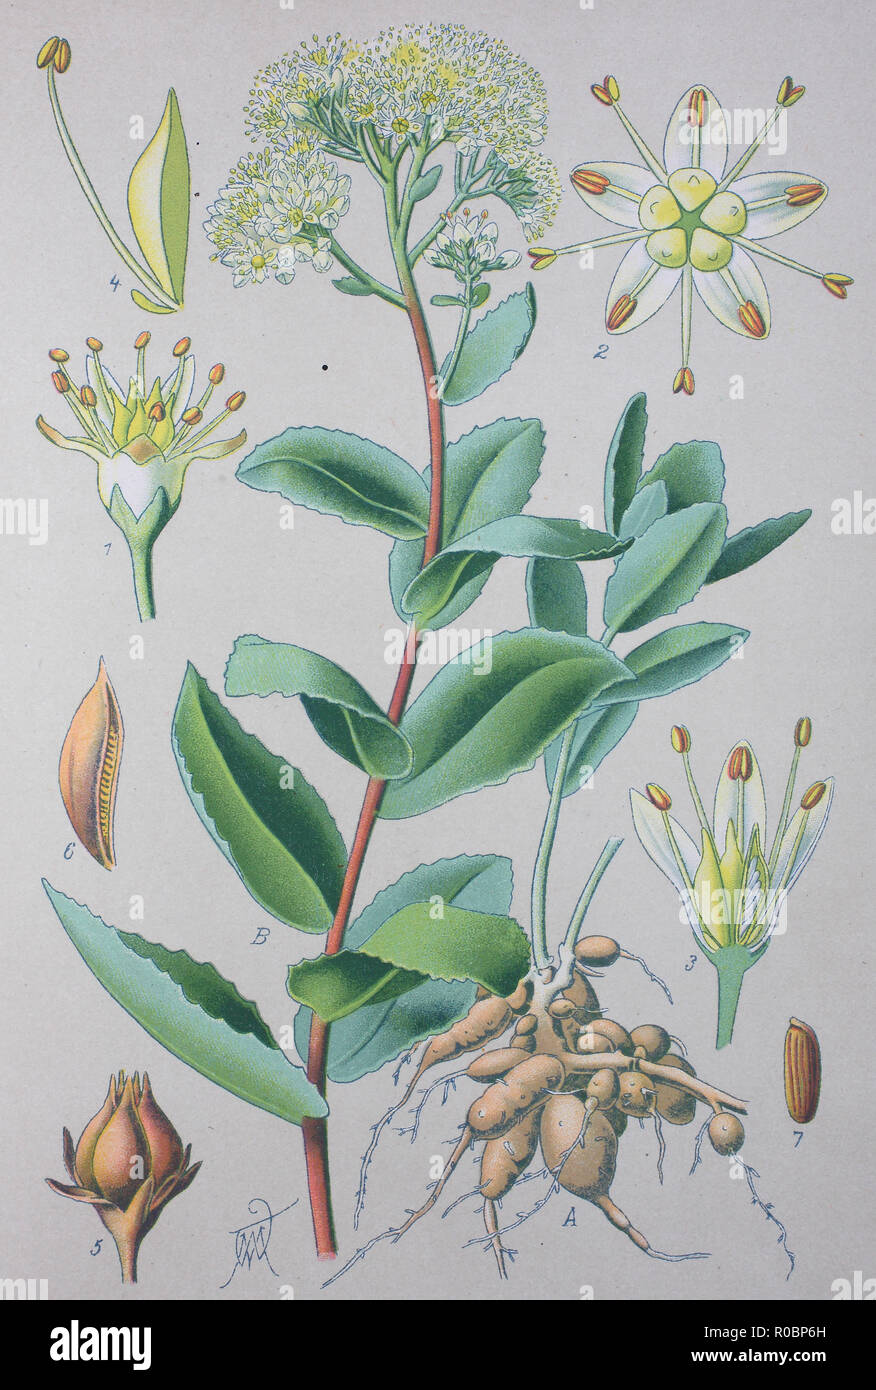 Miglioramento digitale ad alta qualità di riproduzione: Sedum album o white stonecrop, è una fioritura delle piante del genere Sedum nella famiglia Piante succulente | Dicotiledoni Foto Stock